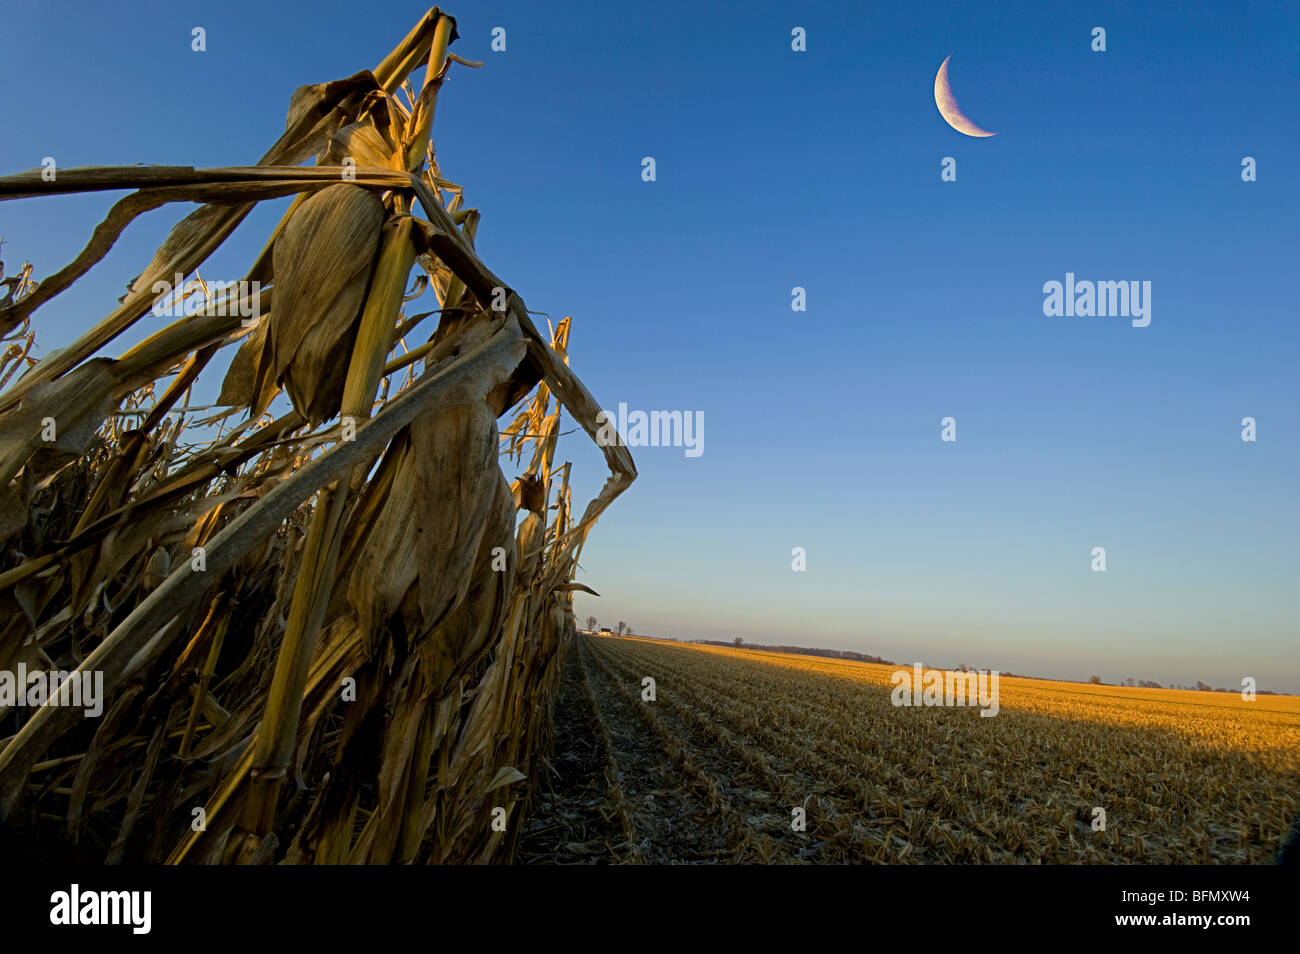 La cosecha de maíz va full tilt en los Estados Unidos. En la noche la luz esta foto fue tomada. Foto de stock